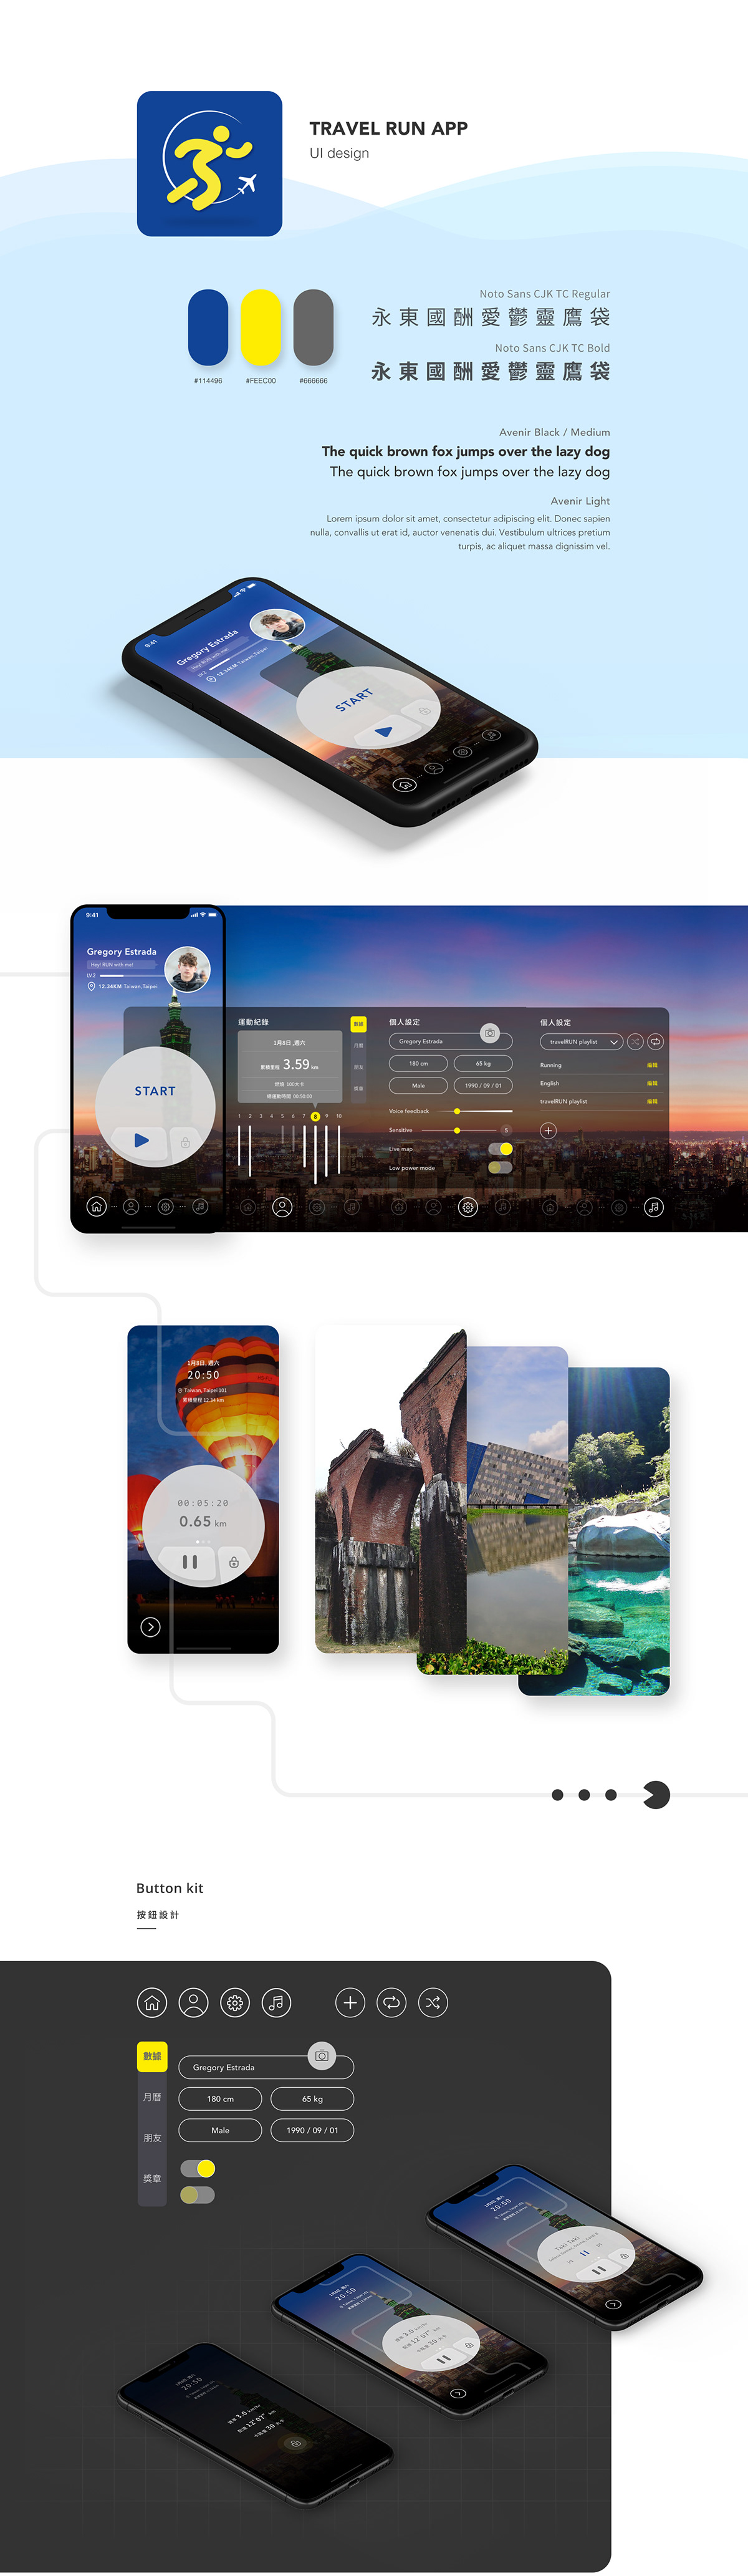 uiux app Icon design running Travel run UI